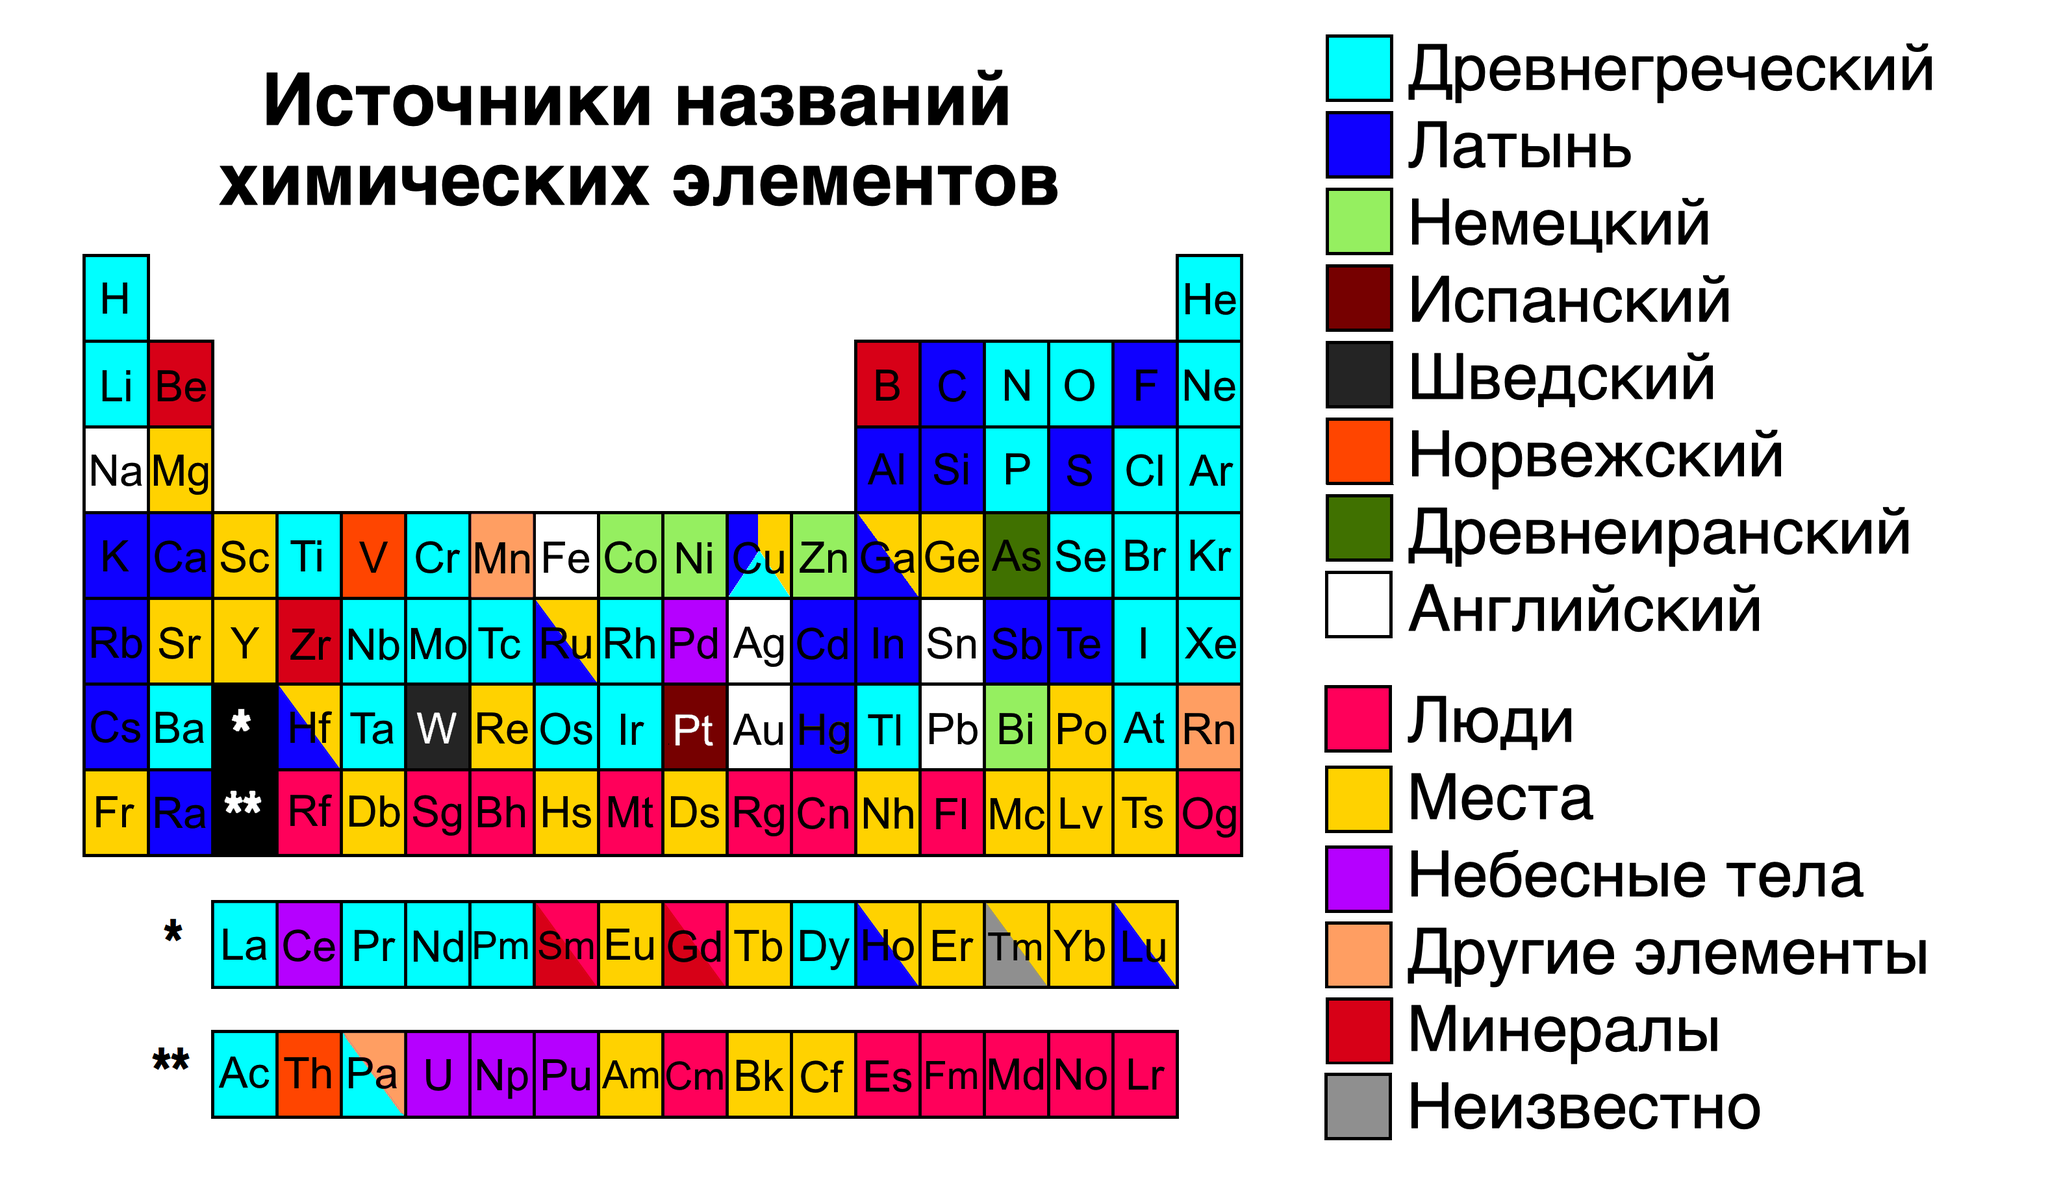 Химические элементы связанные с россией. Химические элементы. Названия химических элементов. Таблица химических элементов с названиями. Химия название химических элементов.